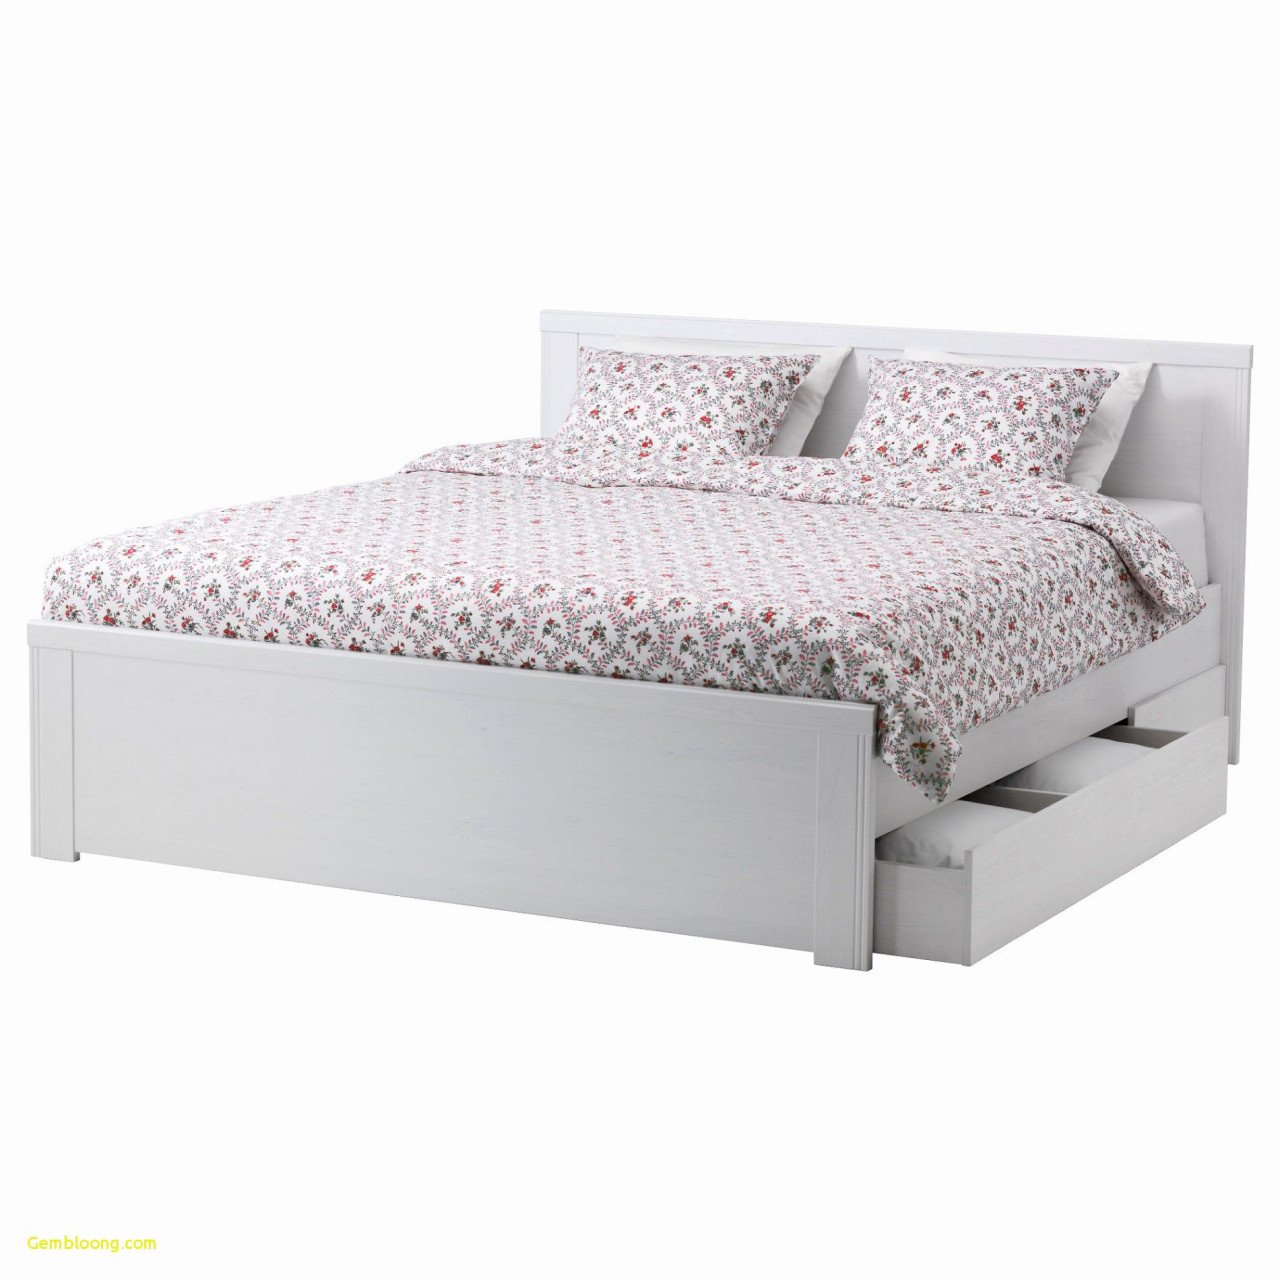 Bedroom Set King Size Inspirational King Metal Platform Bed — Procura Home Blog